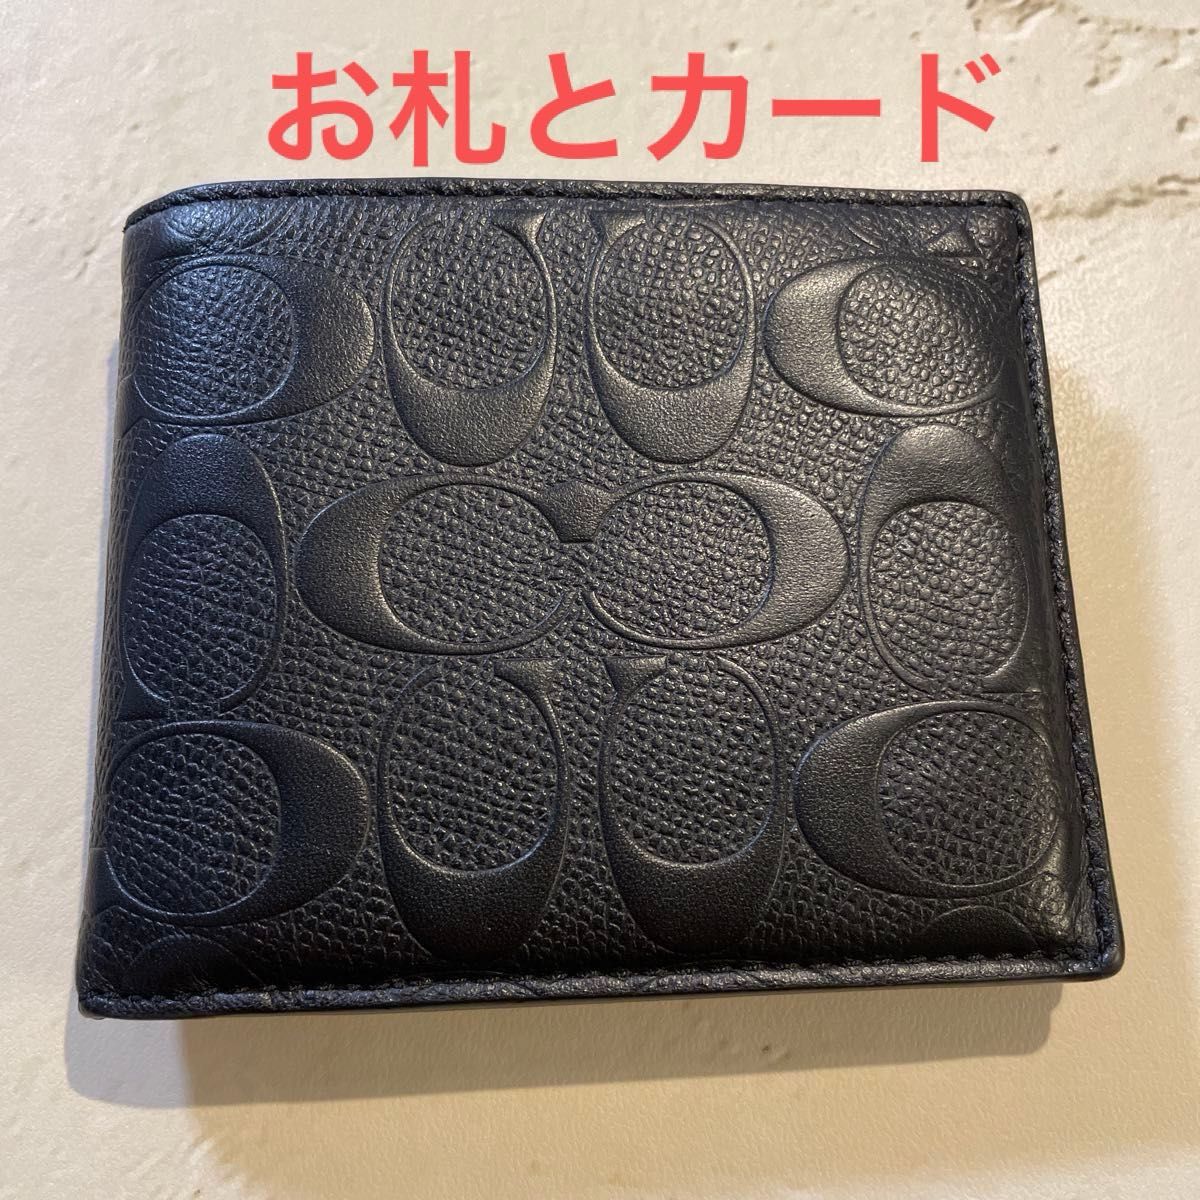 【IDケース無し】COACH 財布 メンズ コンパクト ウォレット シグネチャー